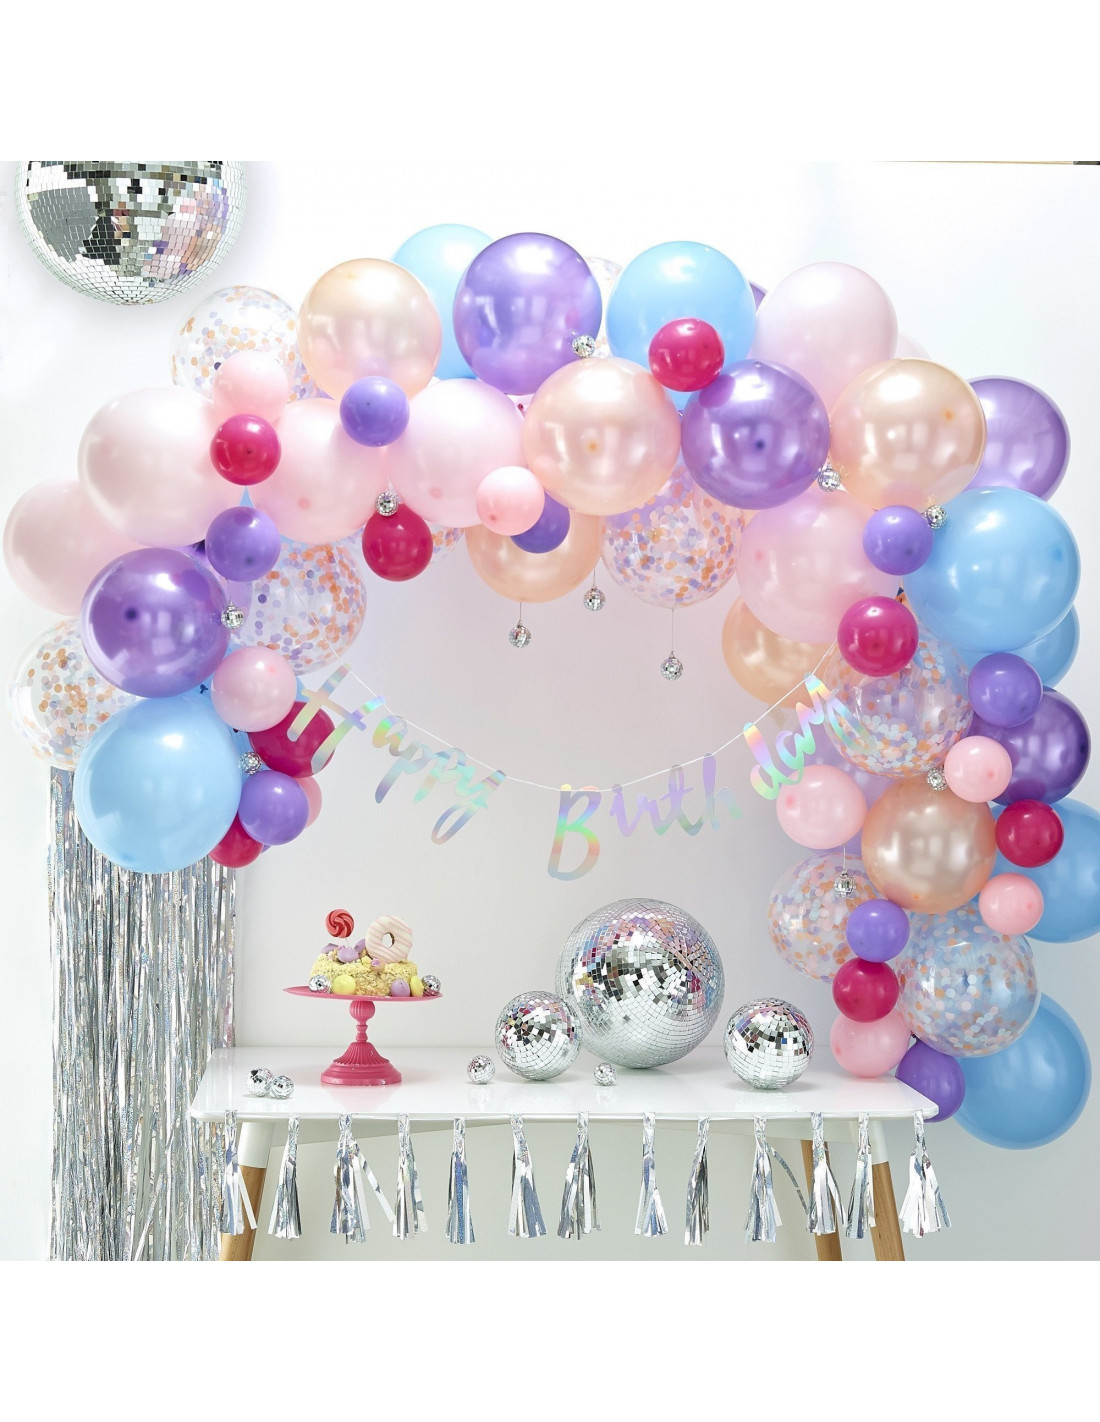 Kit arche ballons iridescent SG-104 : Art & Festif : Articles de fêtes